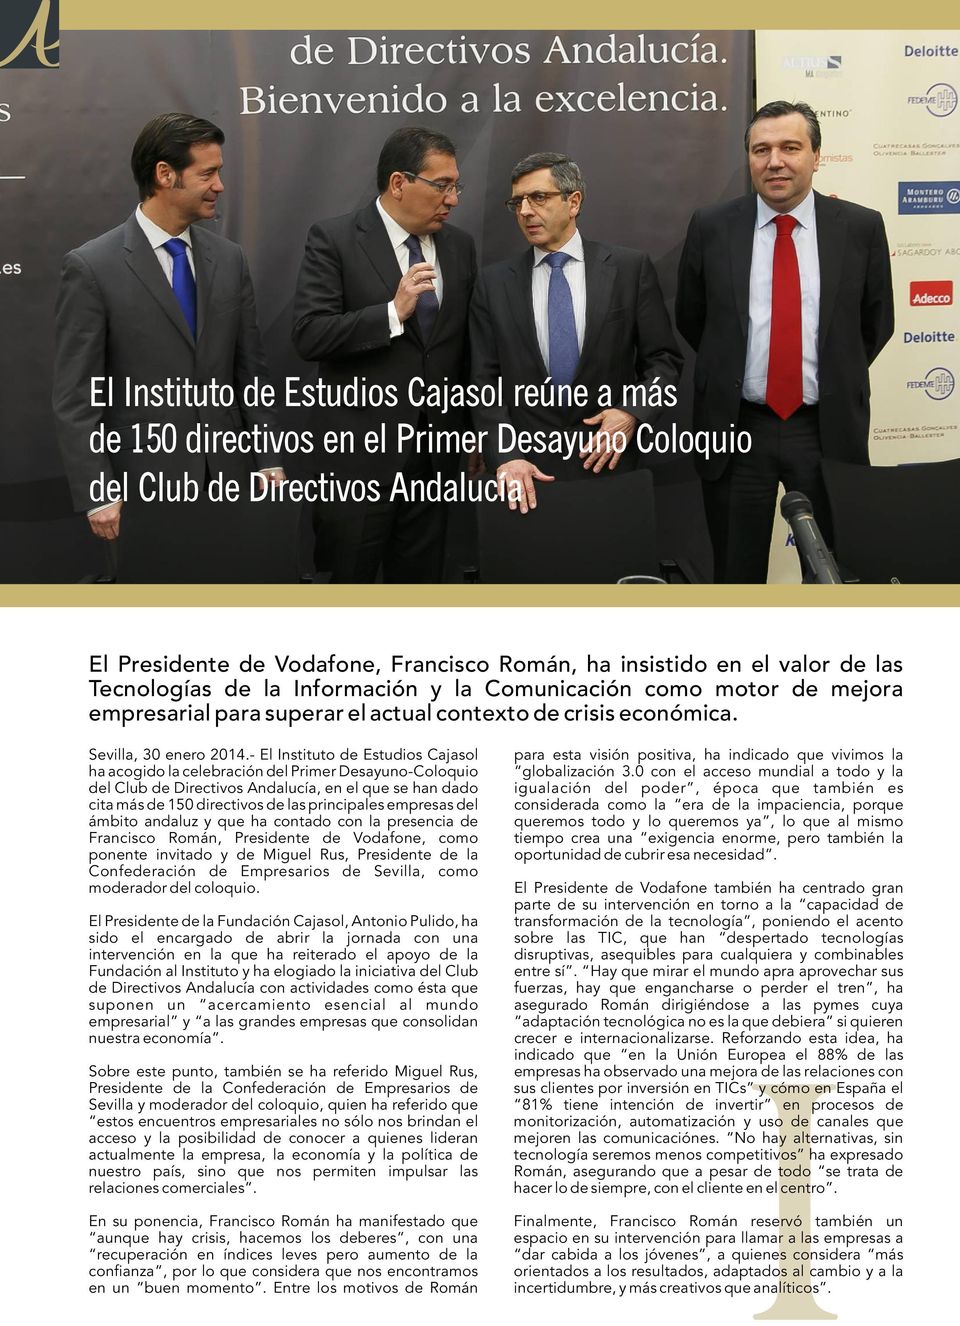 - El Instituto de Estudios Cajasol ha acogido la celebración del Primer Desayuno-Coloquio del Club de Directivos Andalucía, en el que se han dado cita más de 150 directivos de las principales